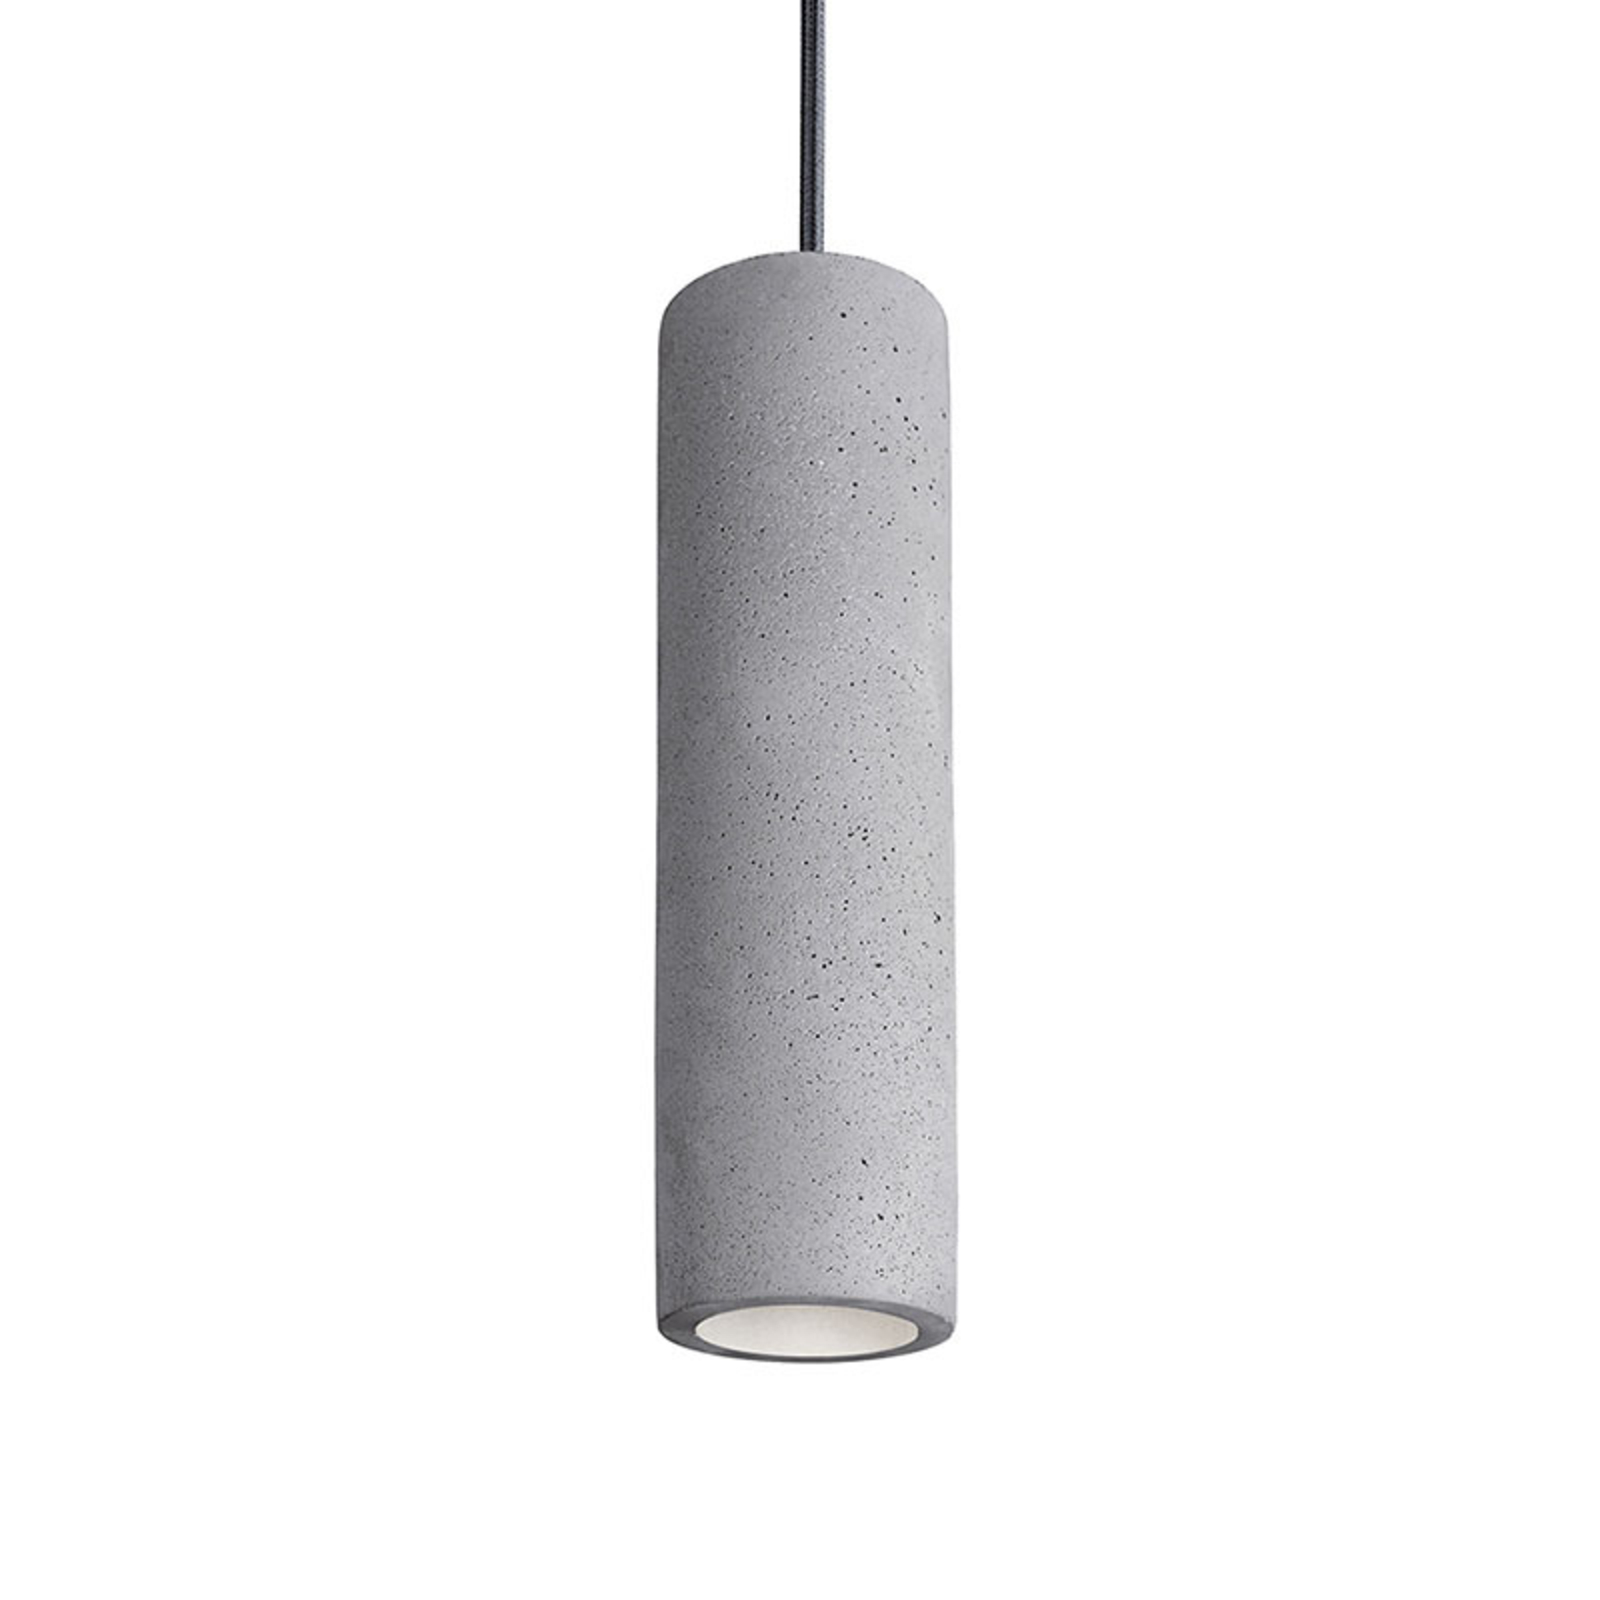 Lampă suspendată Phenix din beton, lungă